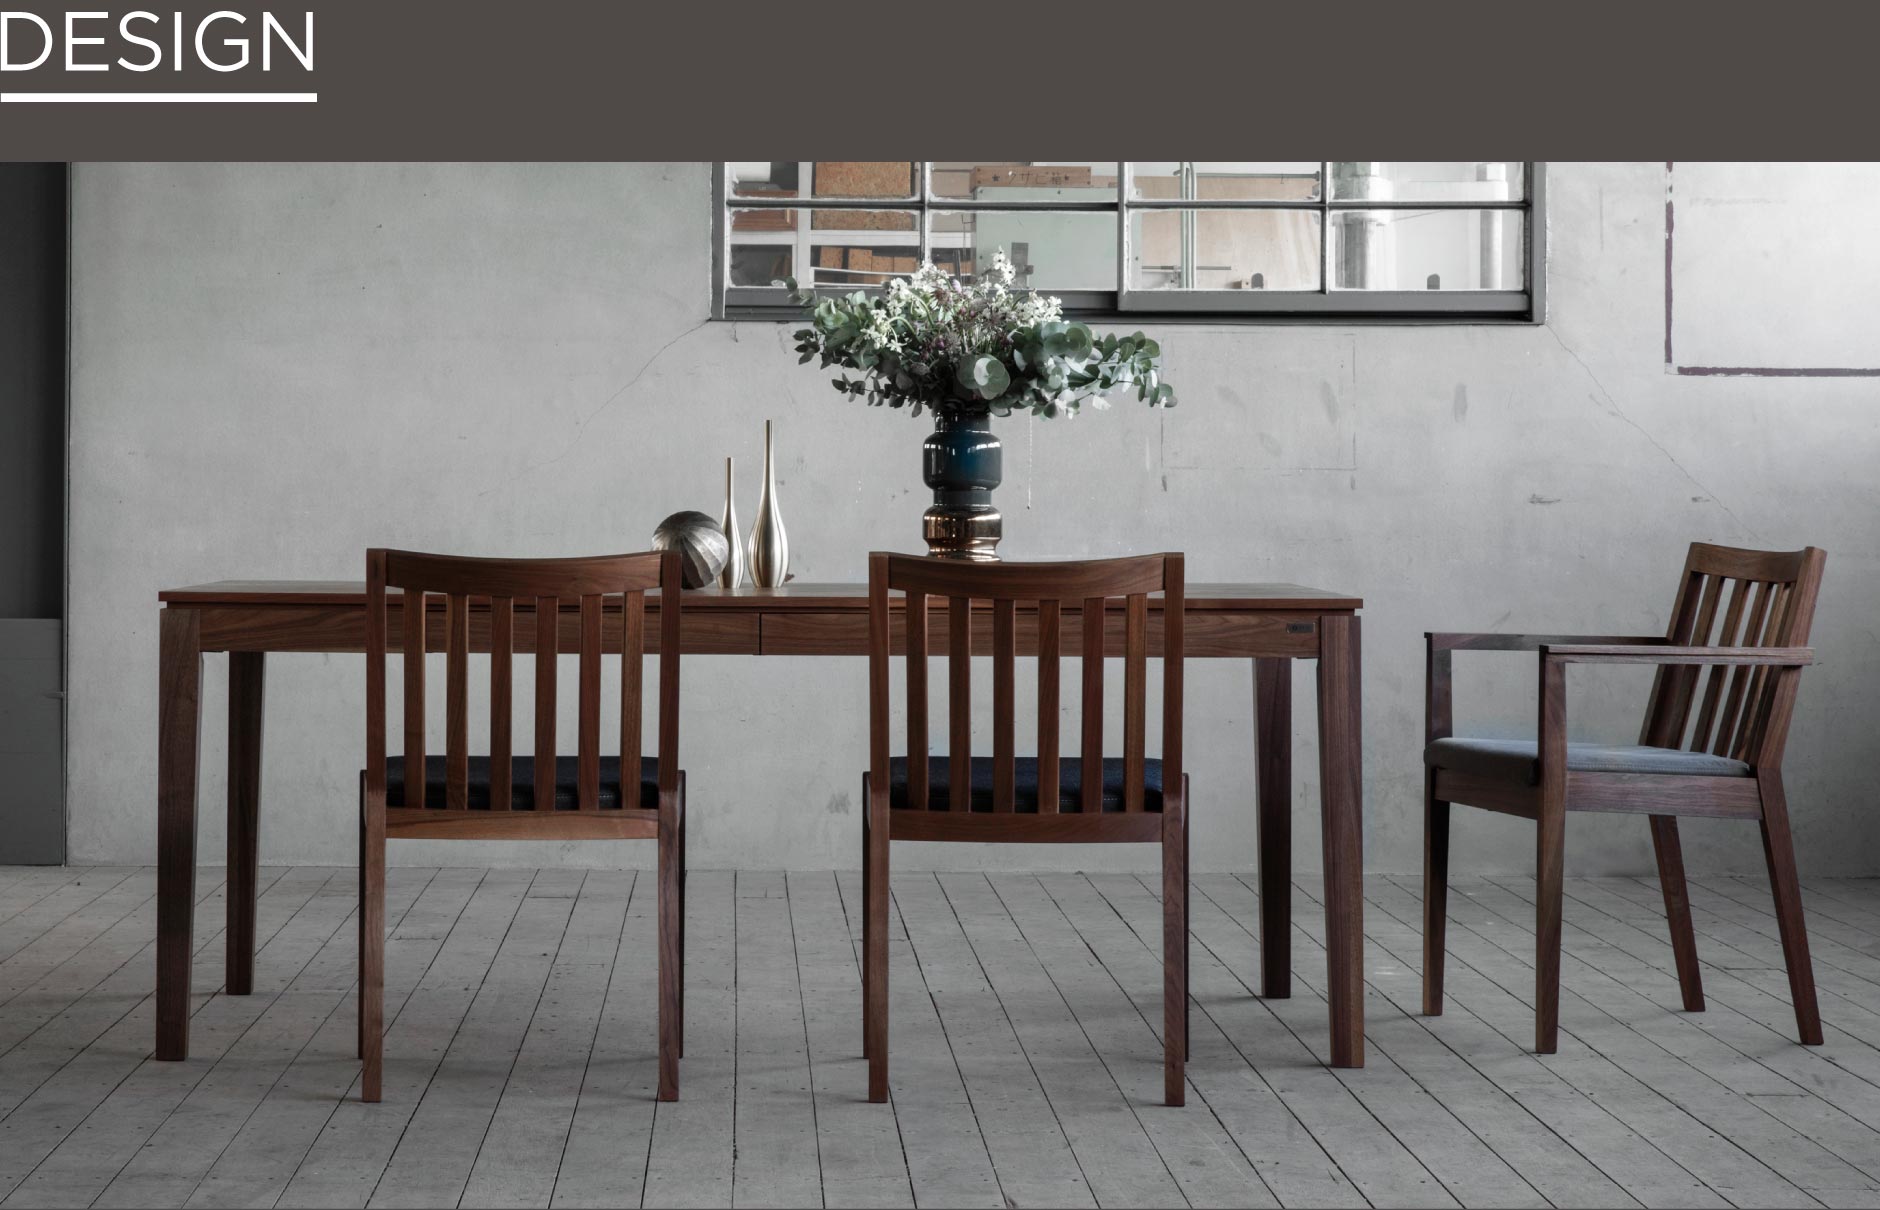 SOLID横浜の家具の中でも人気の引き出し付きダイニングテーブル。シンプルでシャープなラインが美しく、無駄がないデザイン。